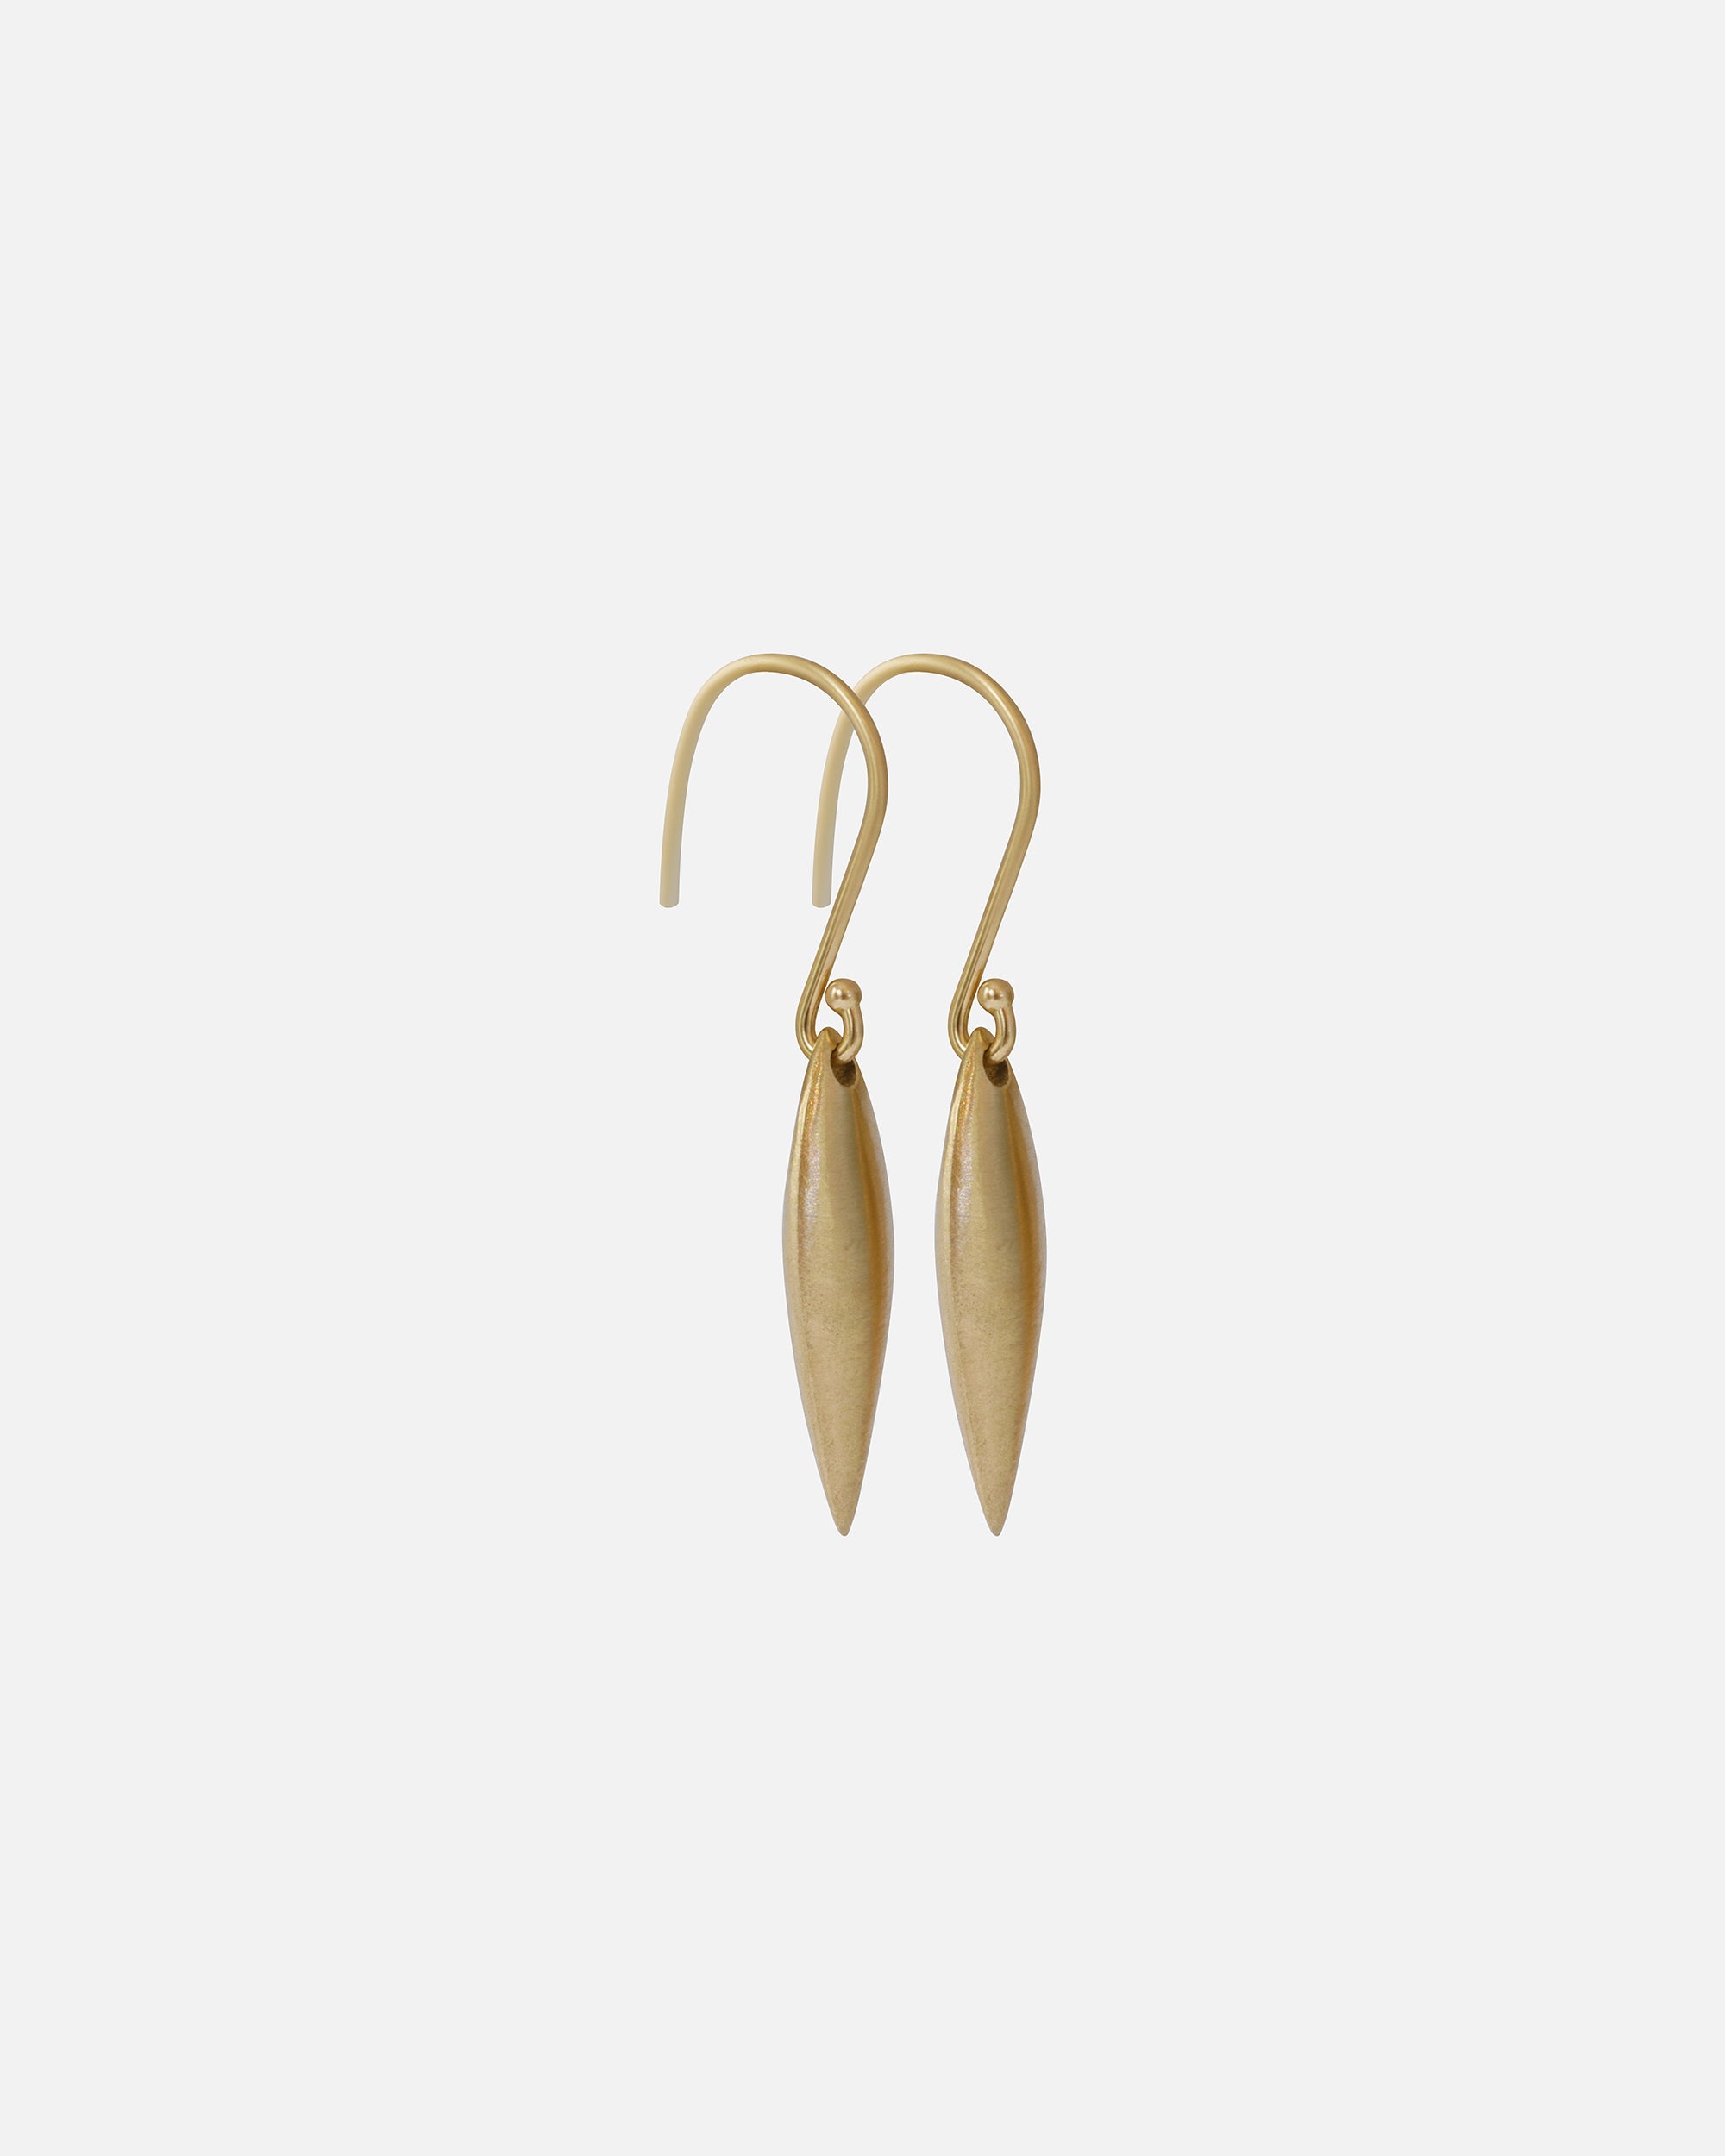 Pod / Earrings By Tricia Kirkland in earrings Category